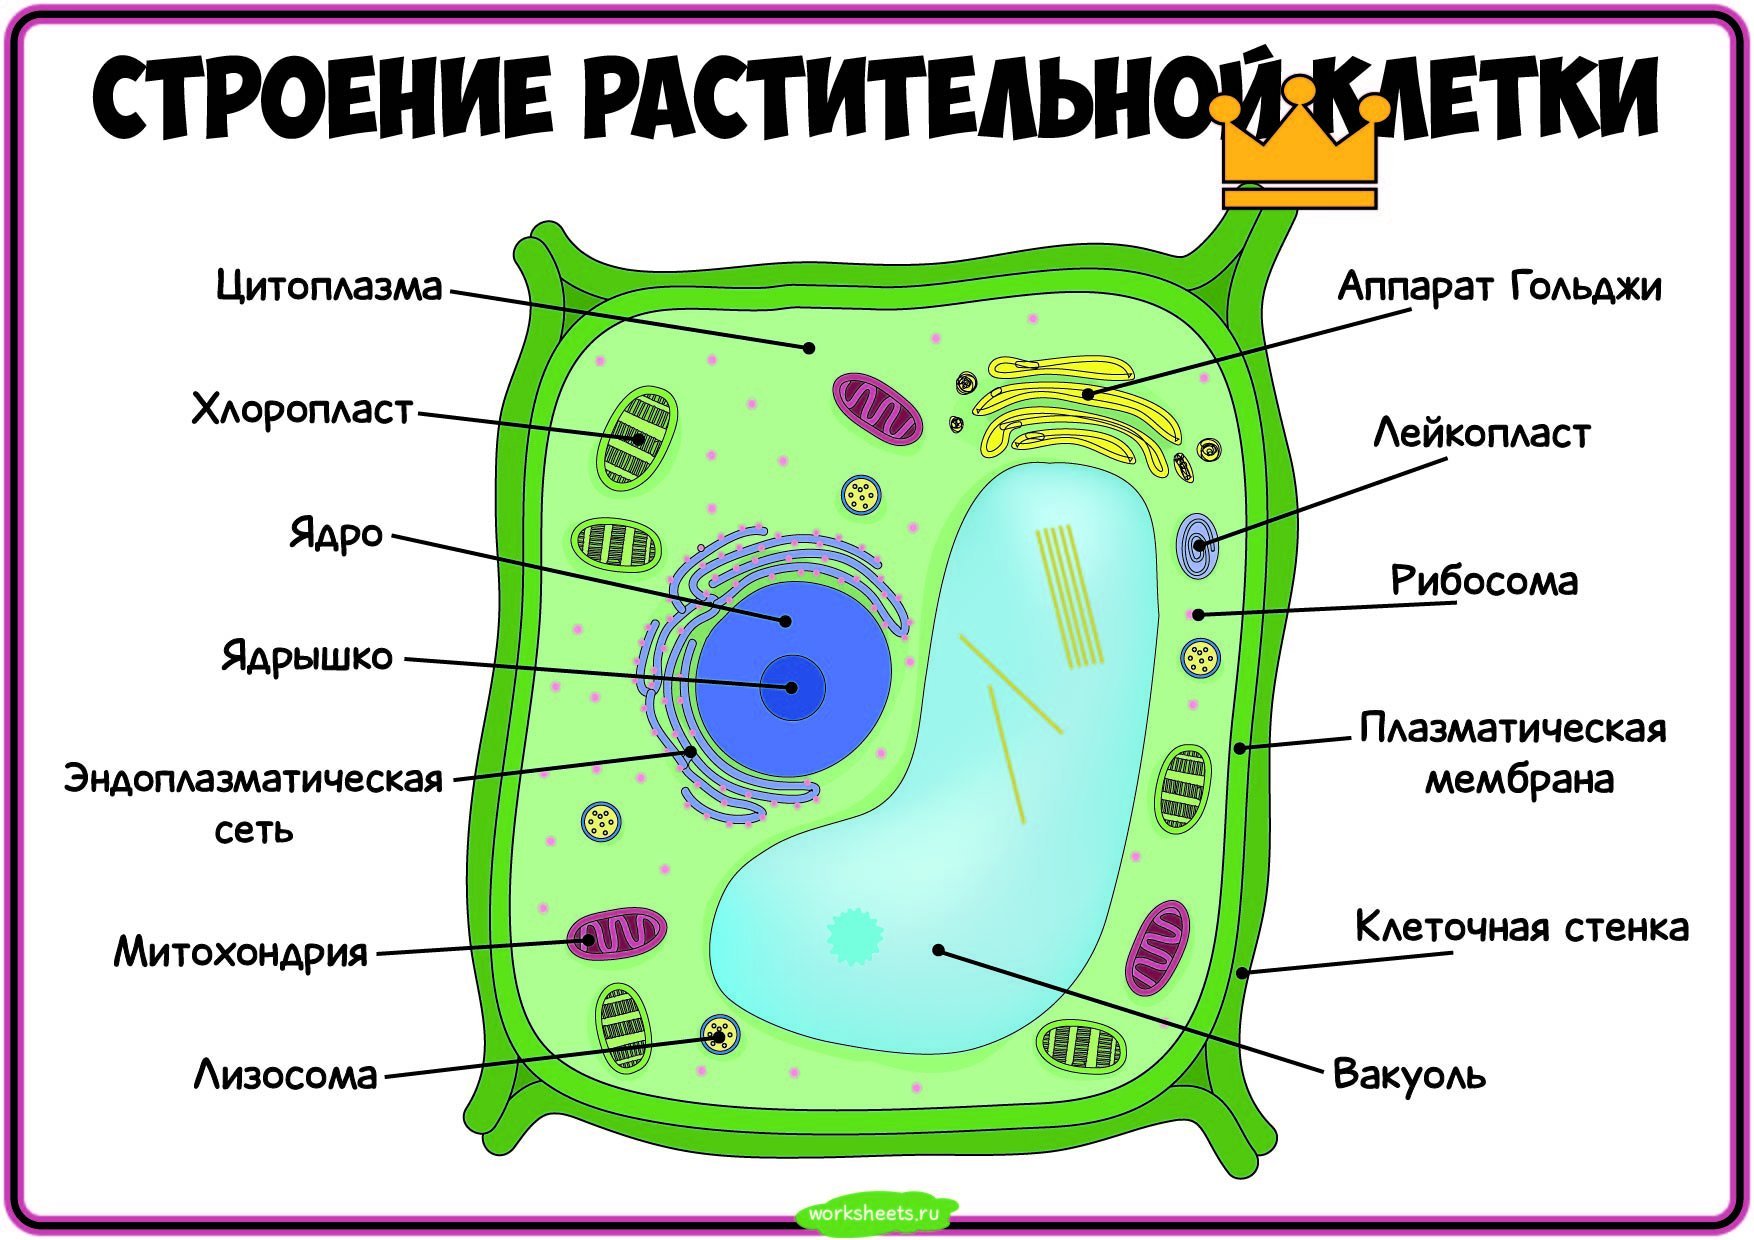 Клетка пояснение. Строение эукариотической клетки клетки растения. Строение растительной клетки 6 кл. Строение растительной клетки ботаника. Структура клетки растения биология 6 класс.